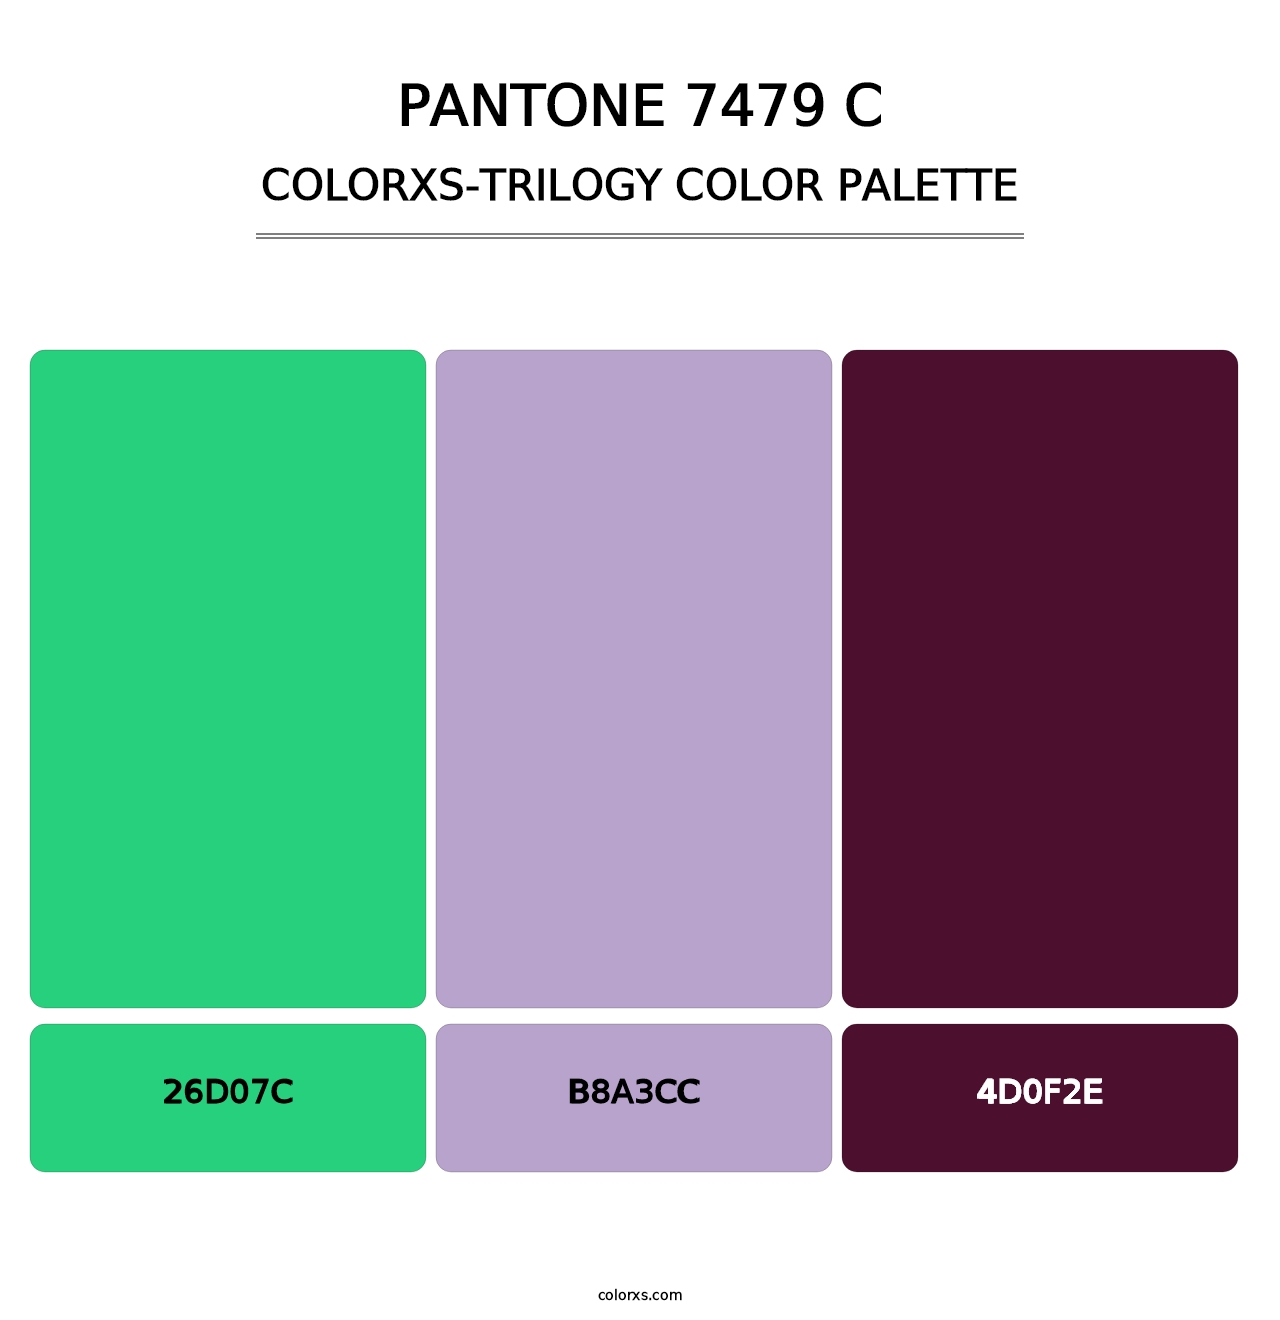 PANTONE 7479 C - Colorxs Trilogy Palette